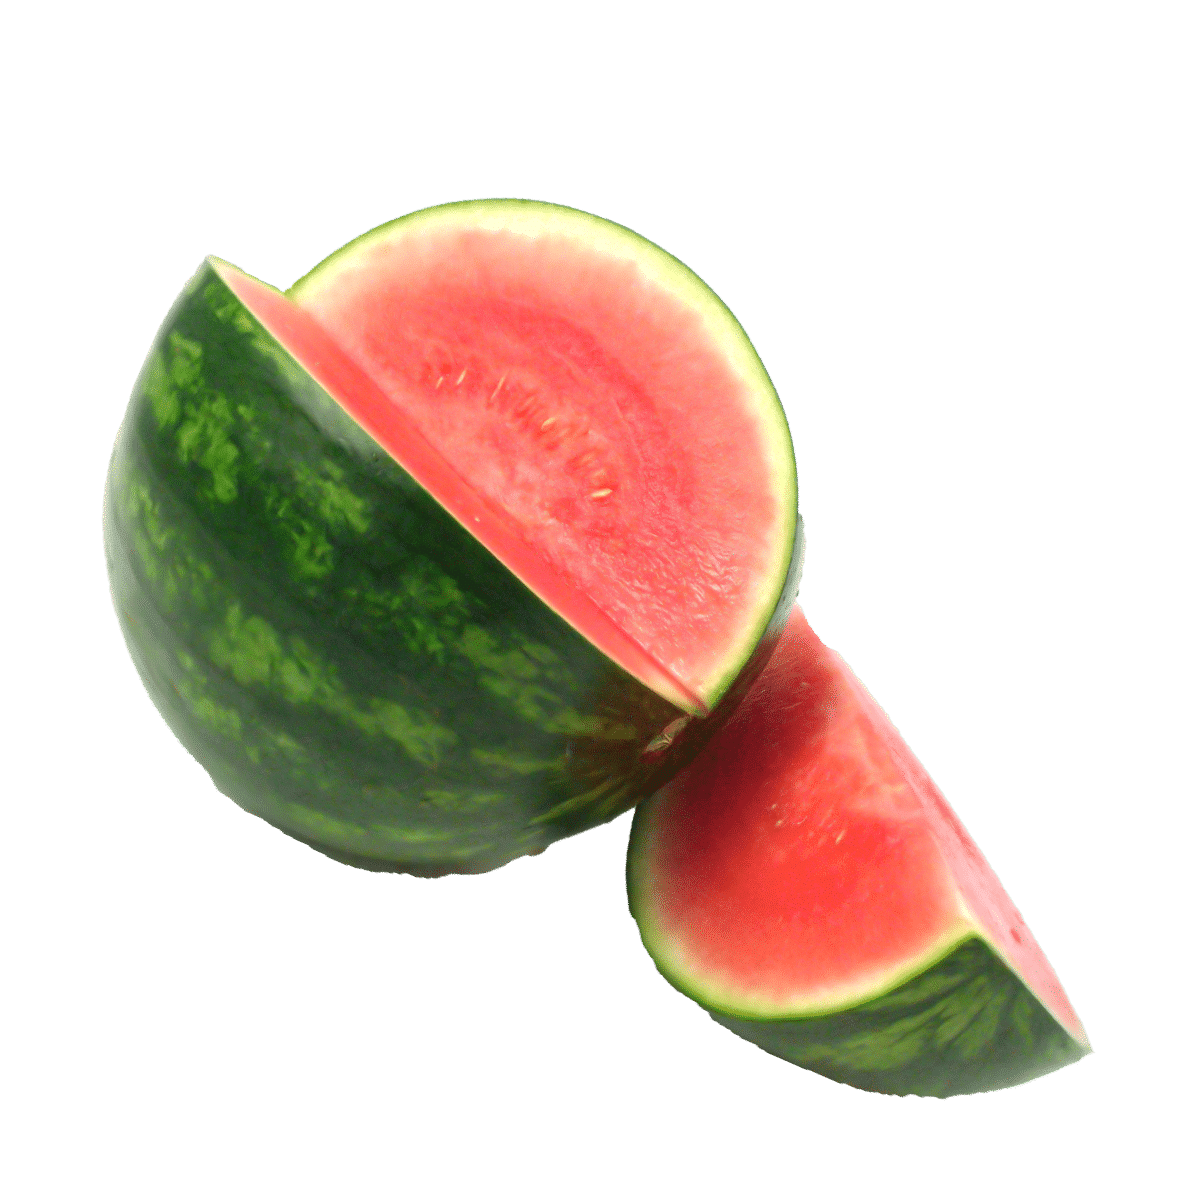 https://binksberryhollow.com/wp-content/uploads/2021/12/seedless-watermelon.png